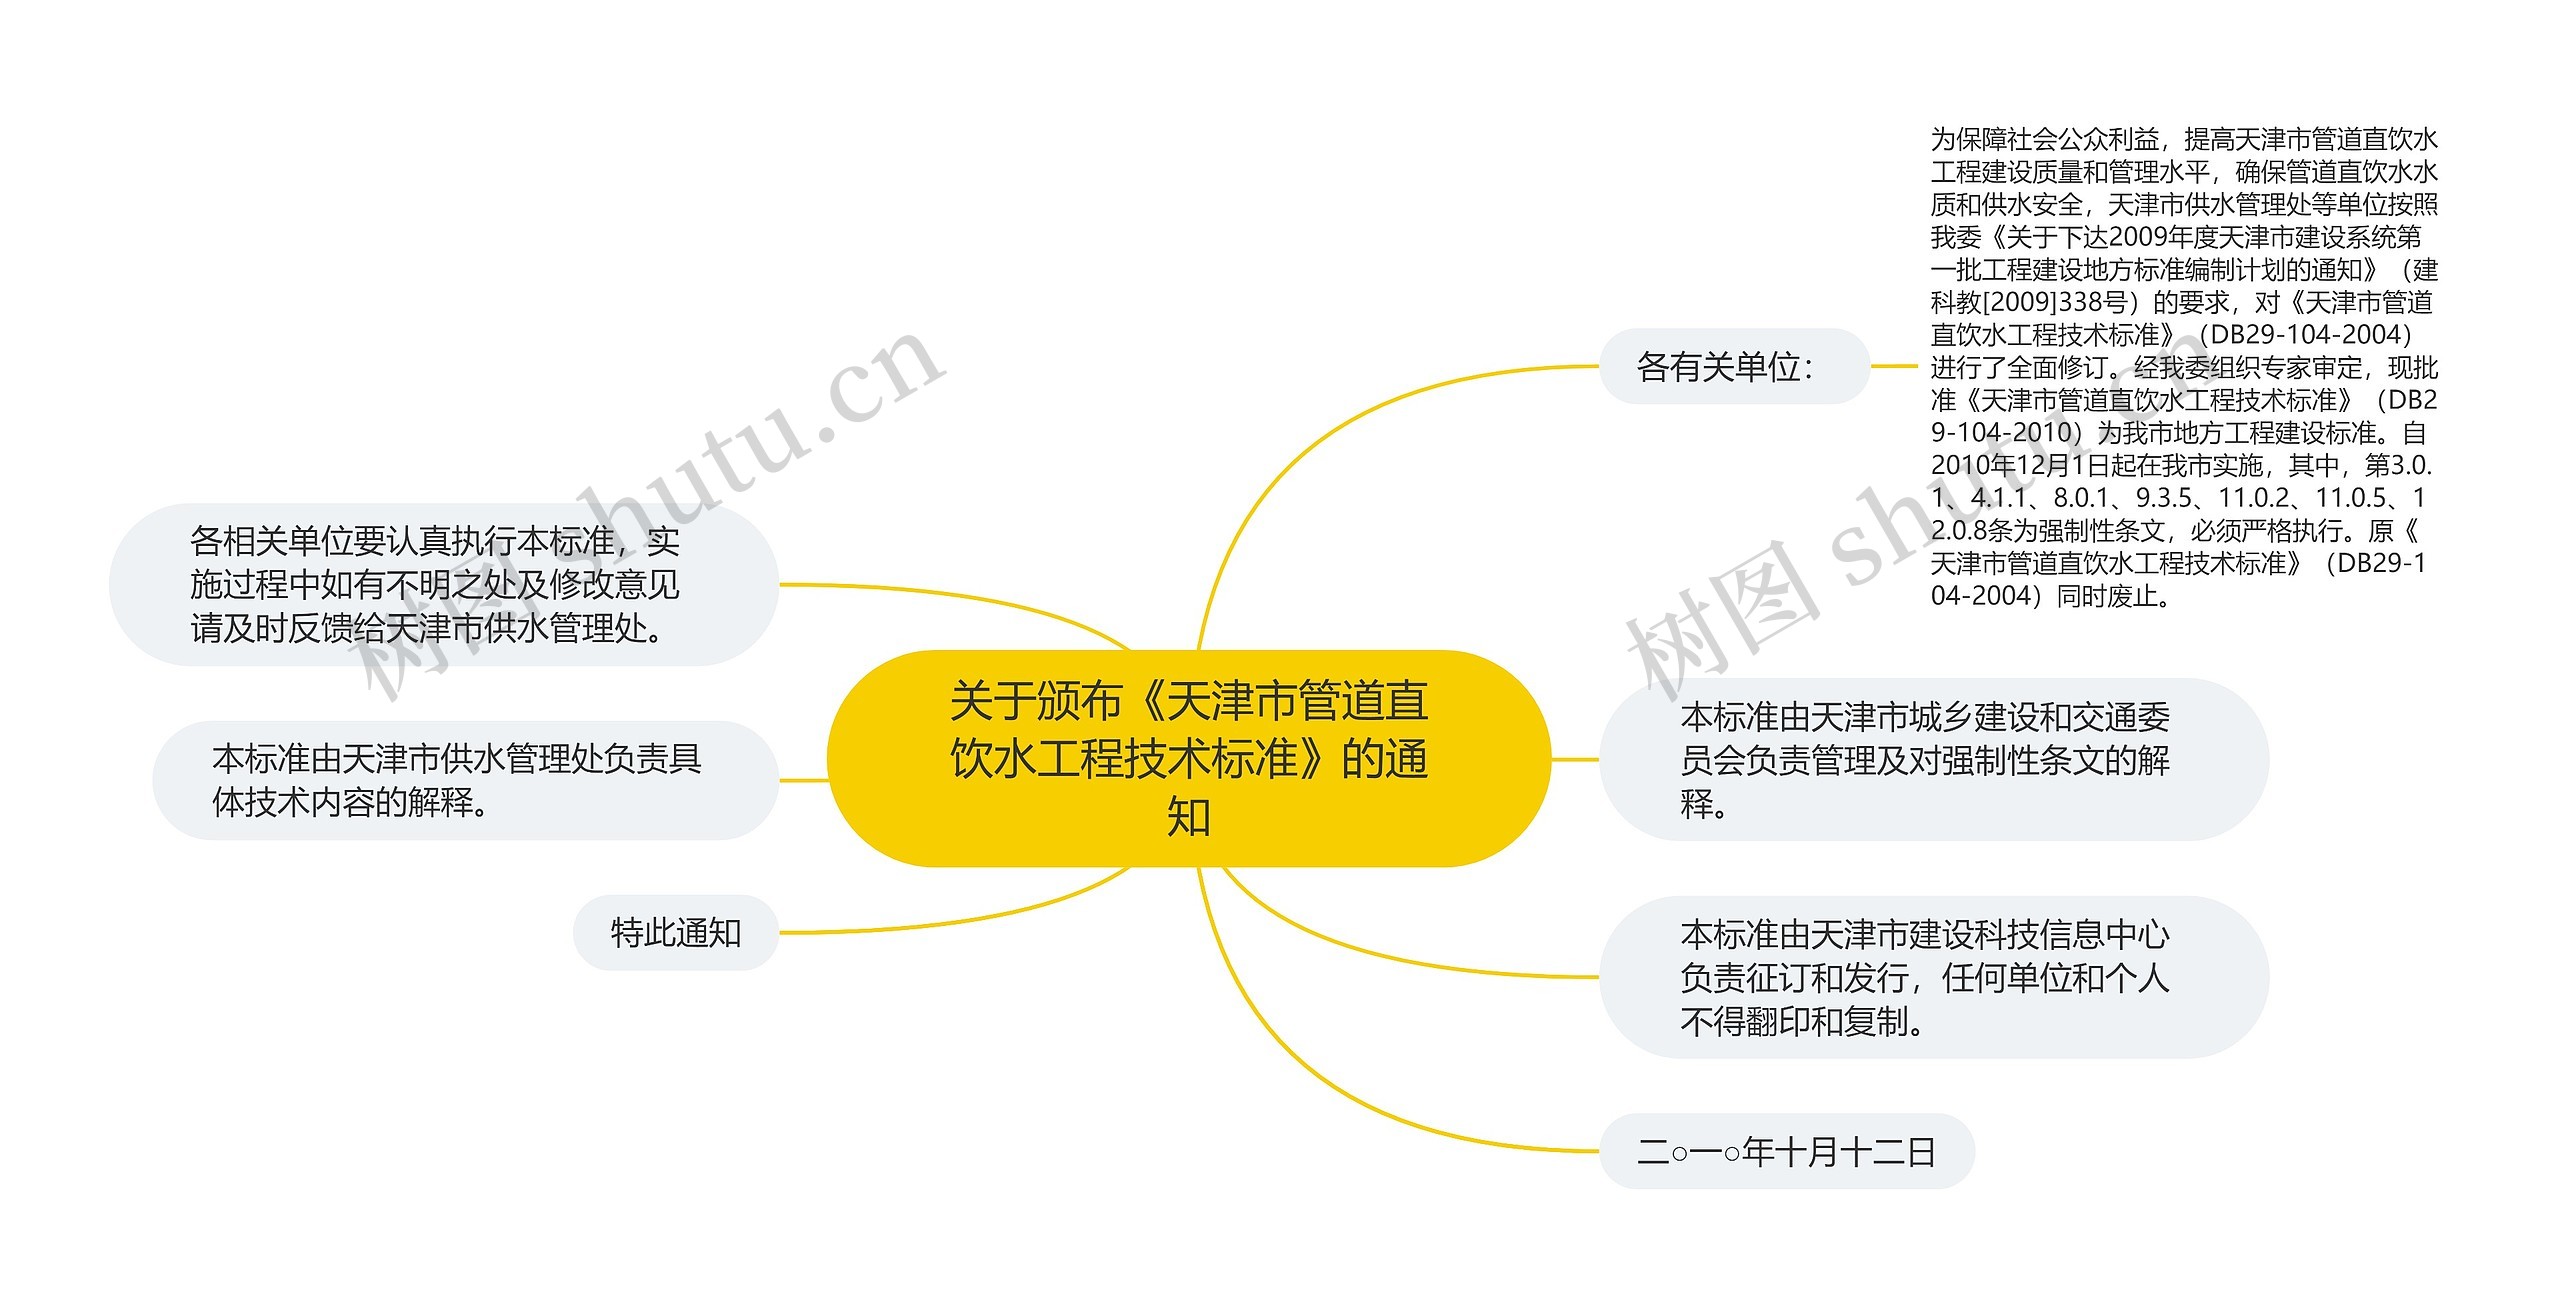 关于颁布《天津市管道直饮水工程技术标准》的通知思维导图